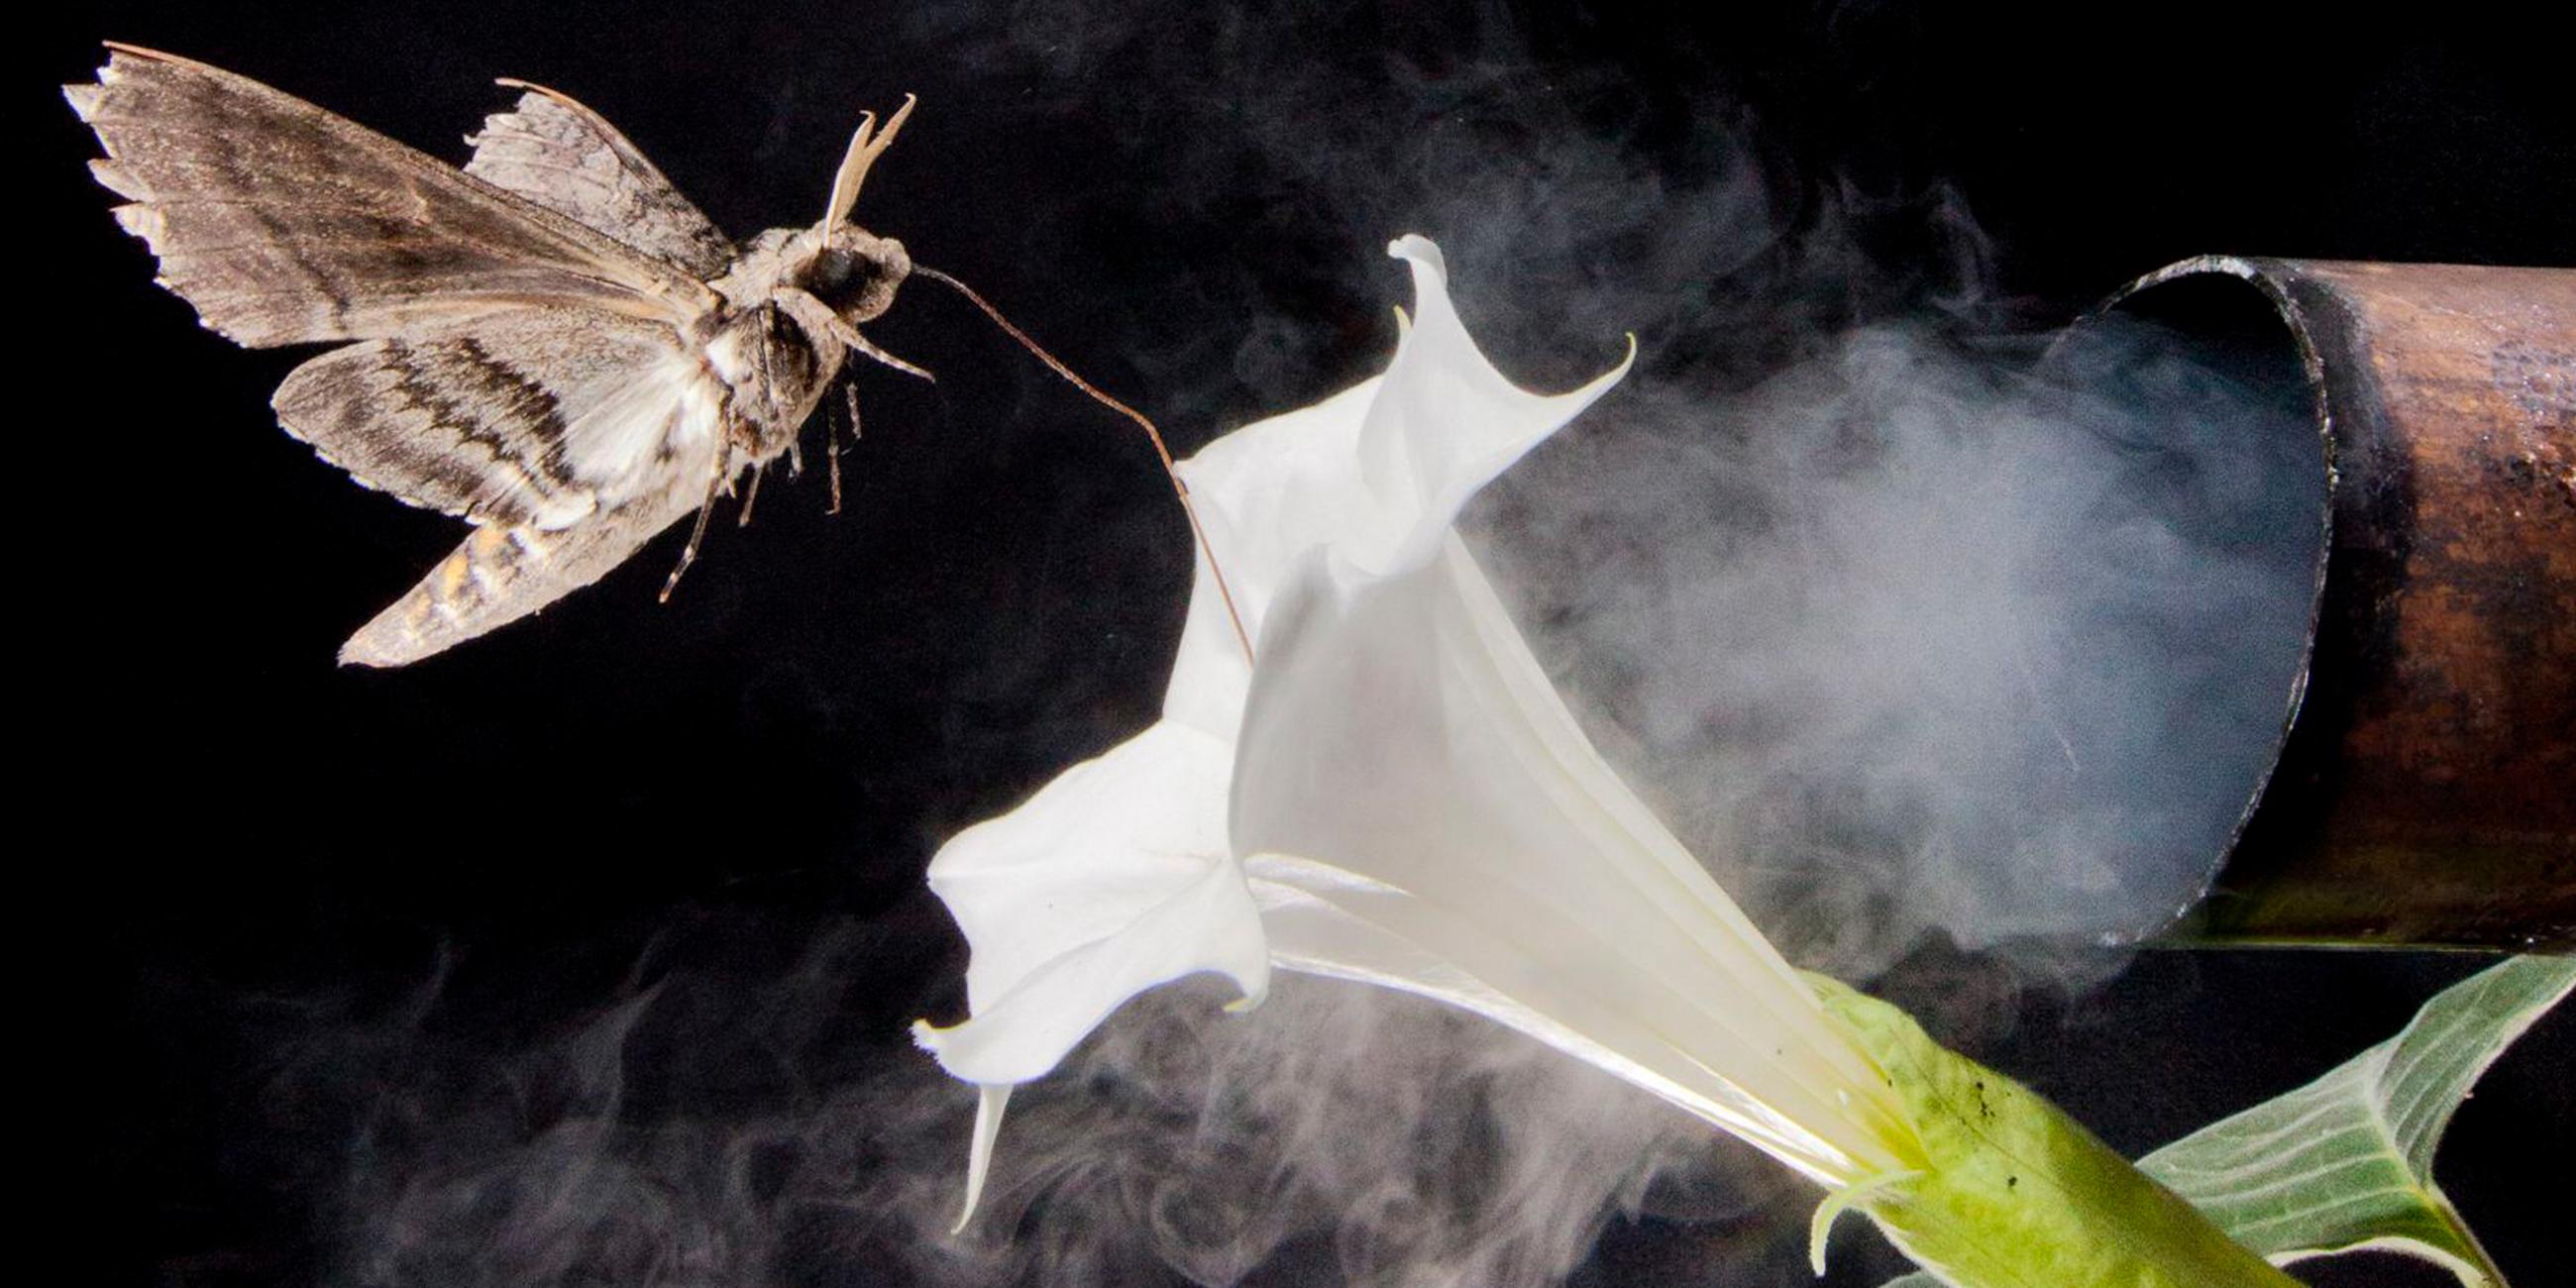 Ein Nachtfalter der Art Hyles lineata sitzt auf einer Blüte einer Nachtkerze (Oenothera pallida) nahe eines Auspuffrohres (unbekanntes Aufnahmedatum).